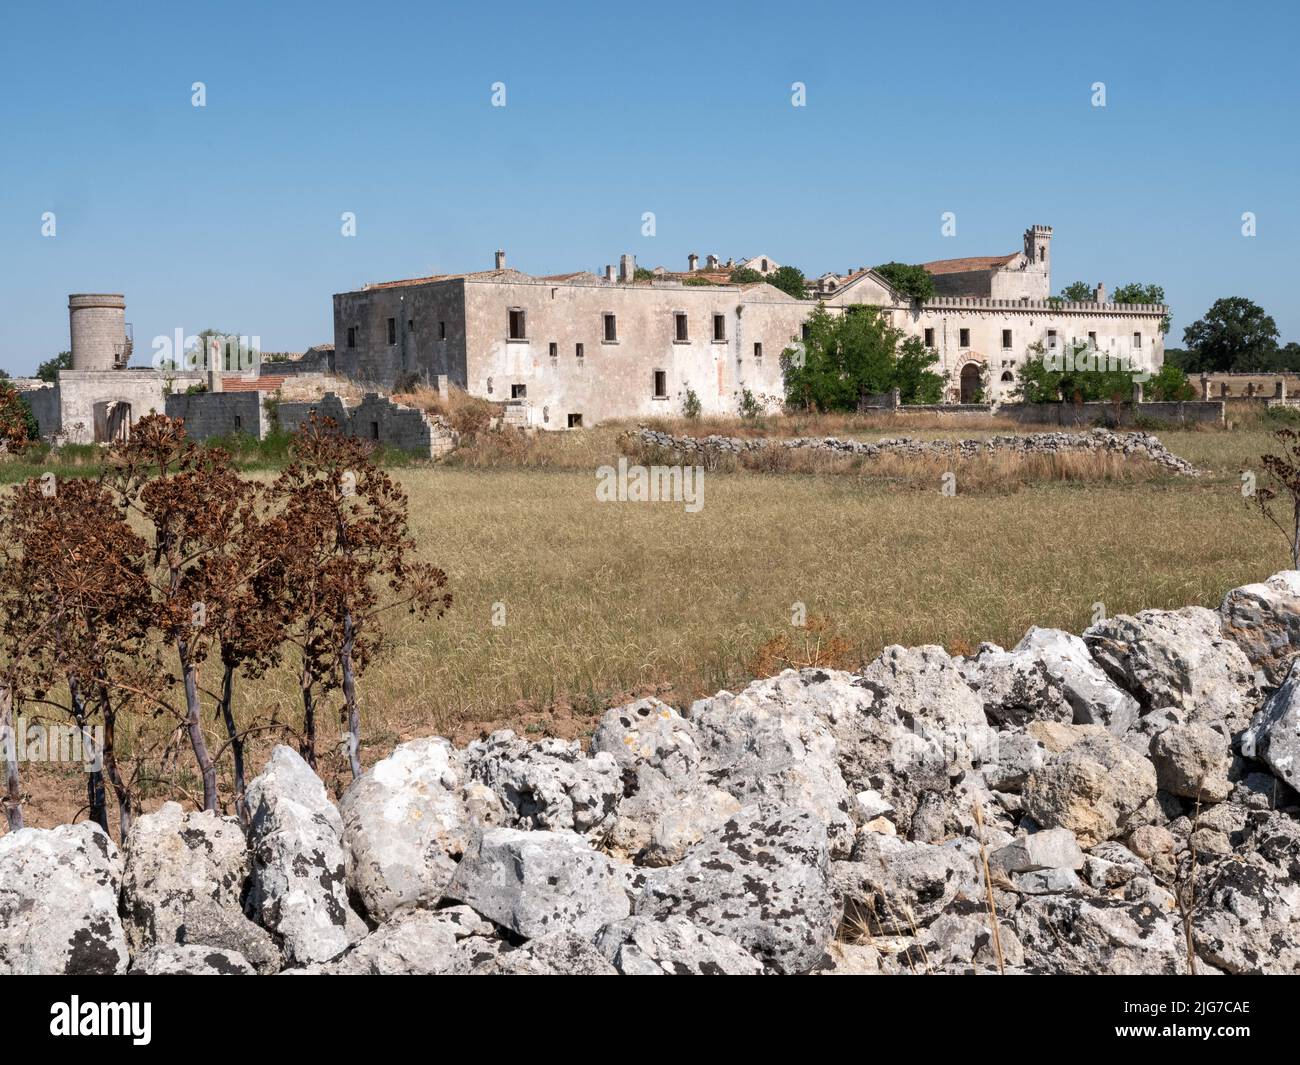 Ein ländliches Anwesen mit riesigen Feldern, das in einem fortgeschrittenen Zustand des Vergehens in der Region Alberobello in Apulien in Süditalien liegt Stockfoto